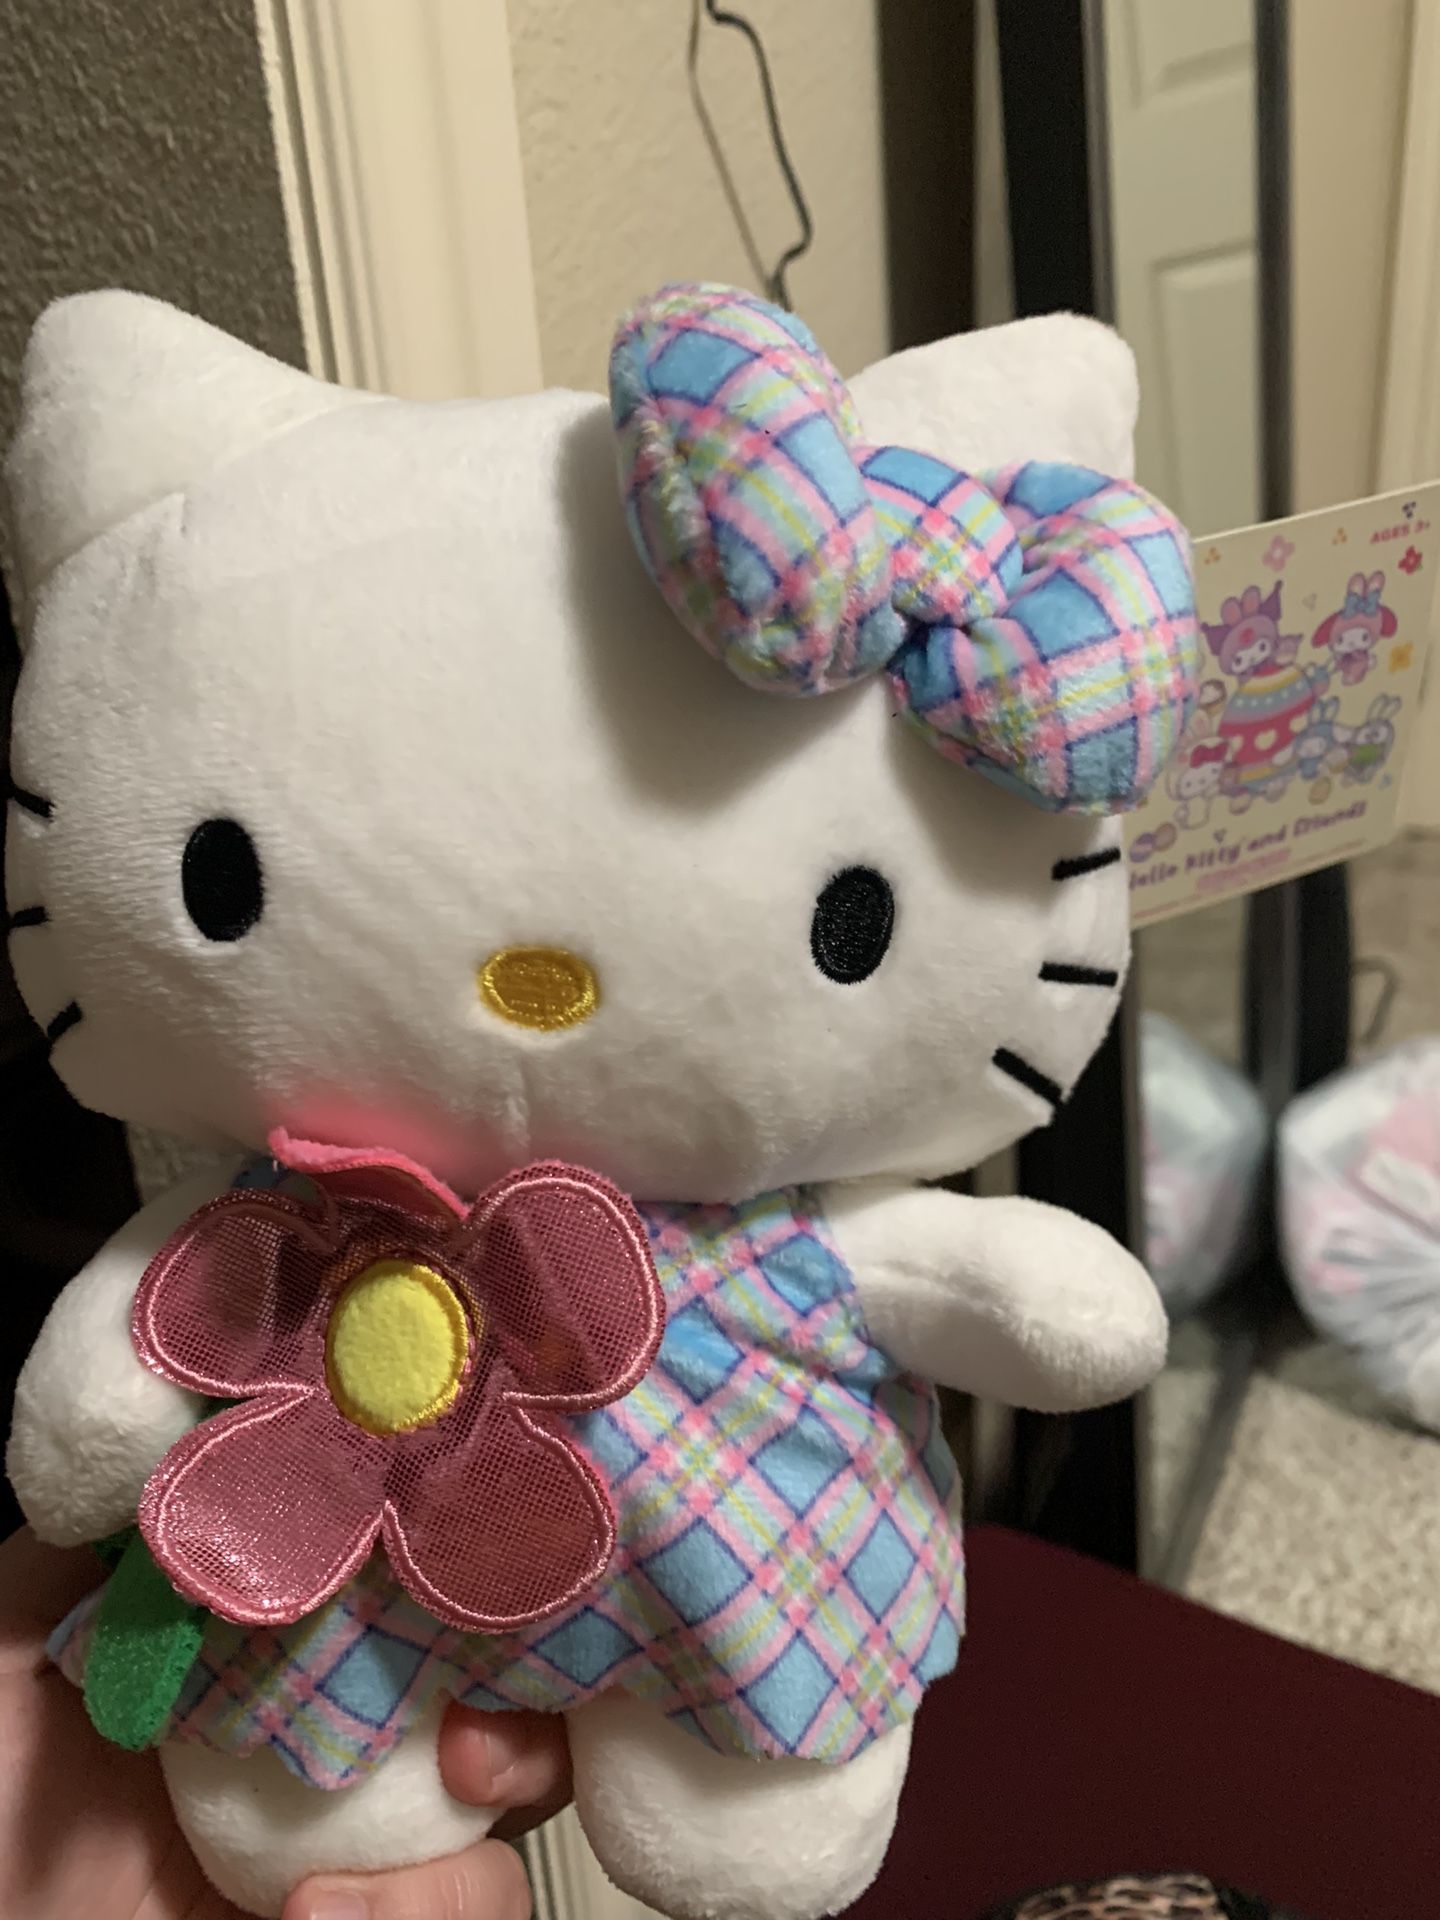 Hello Kitty Plushie 